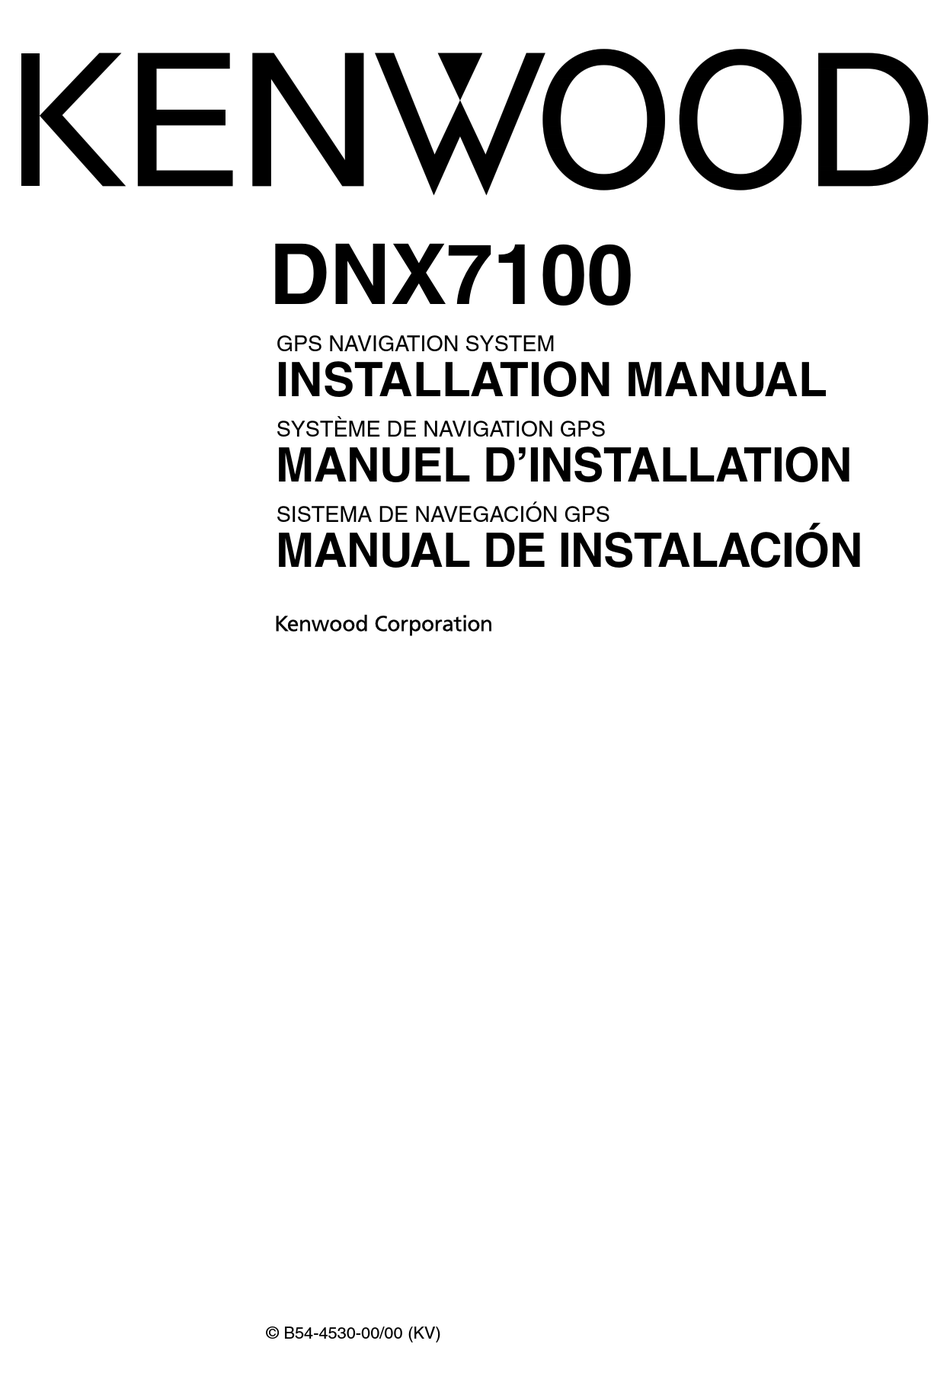 Kenwood Dnx 710 Installation Manual Pdf Download Manualslib